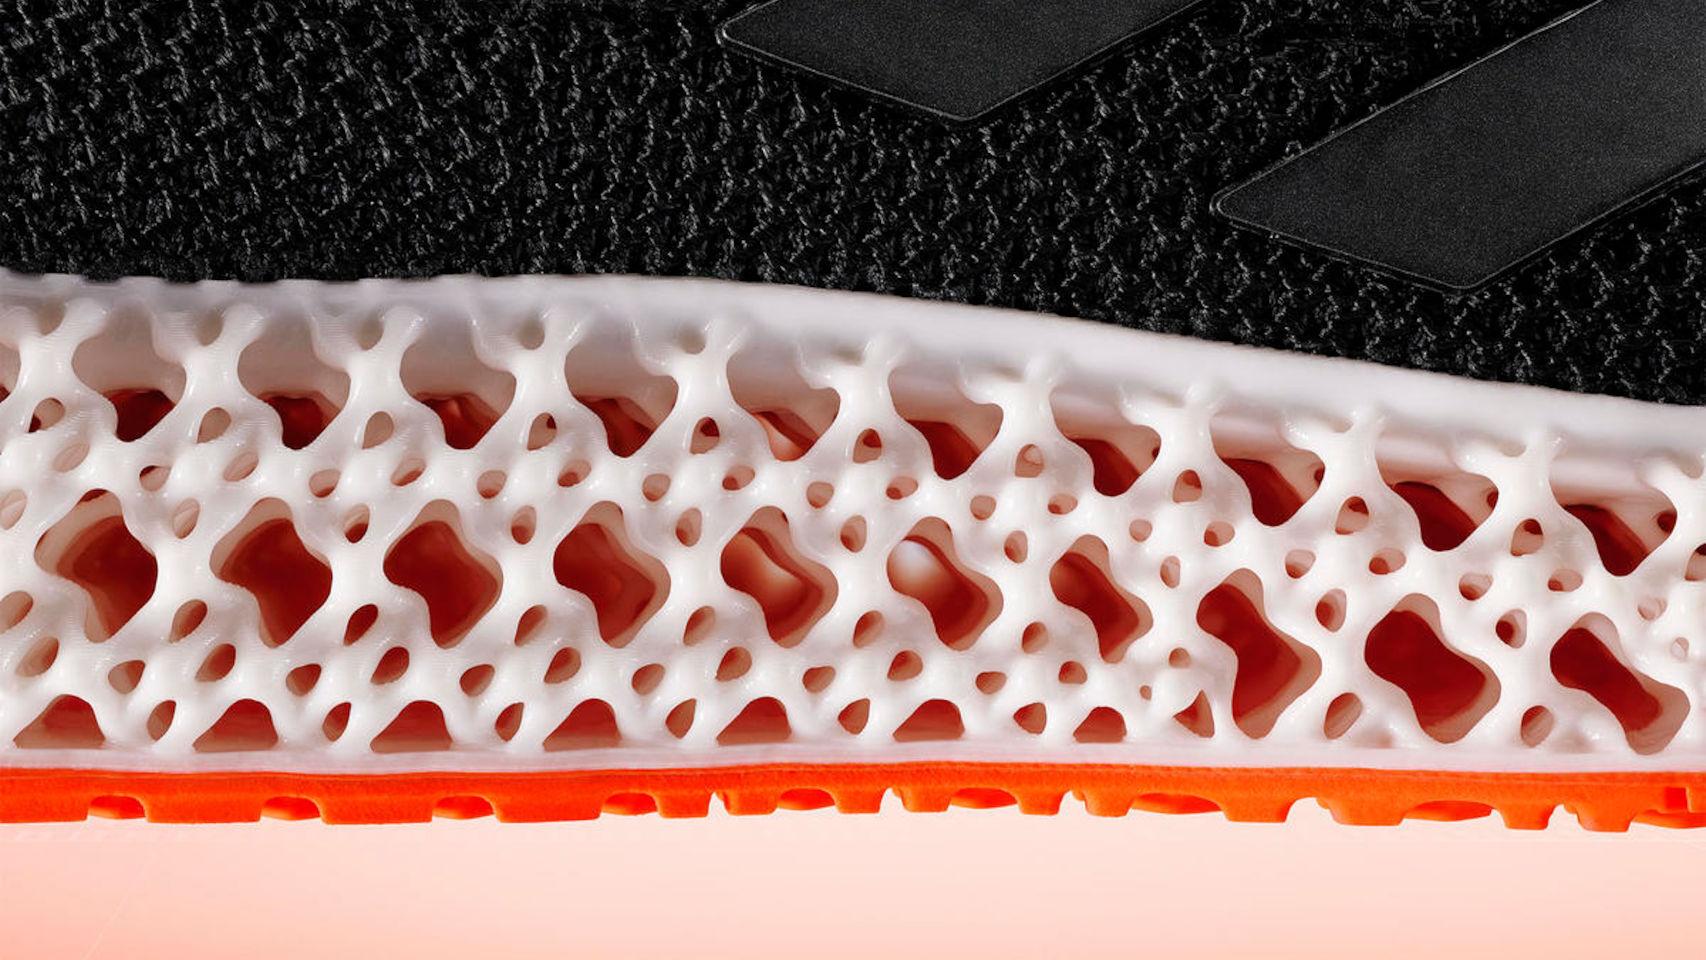 nuevas Adidas tienen suelas impresas en 3D que mueven el pie